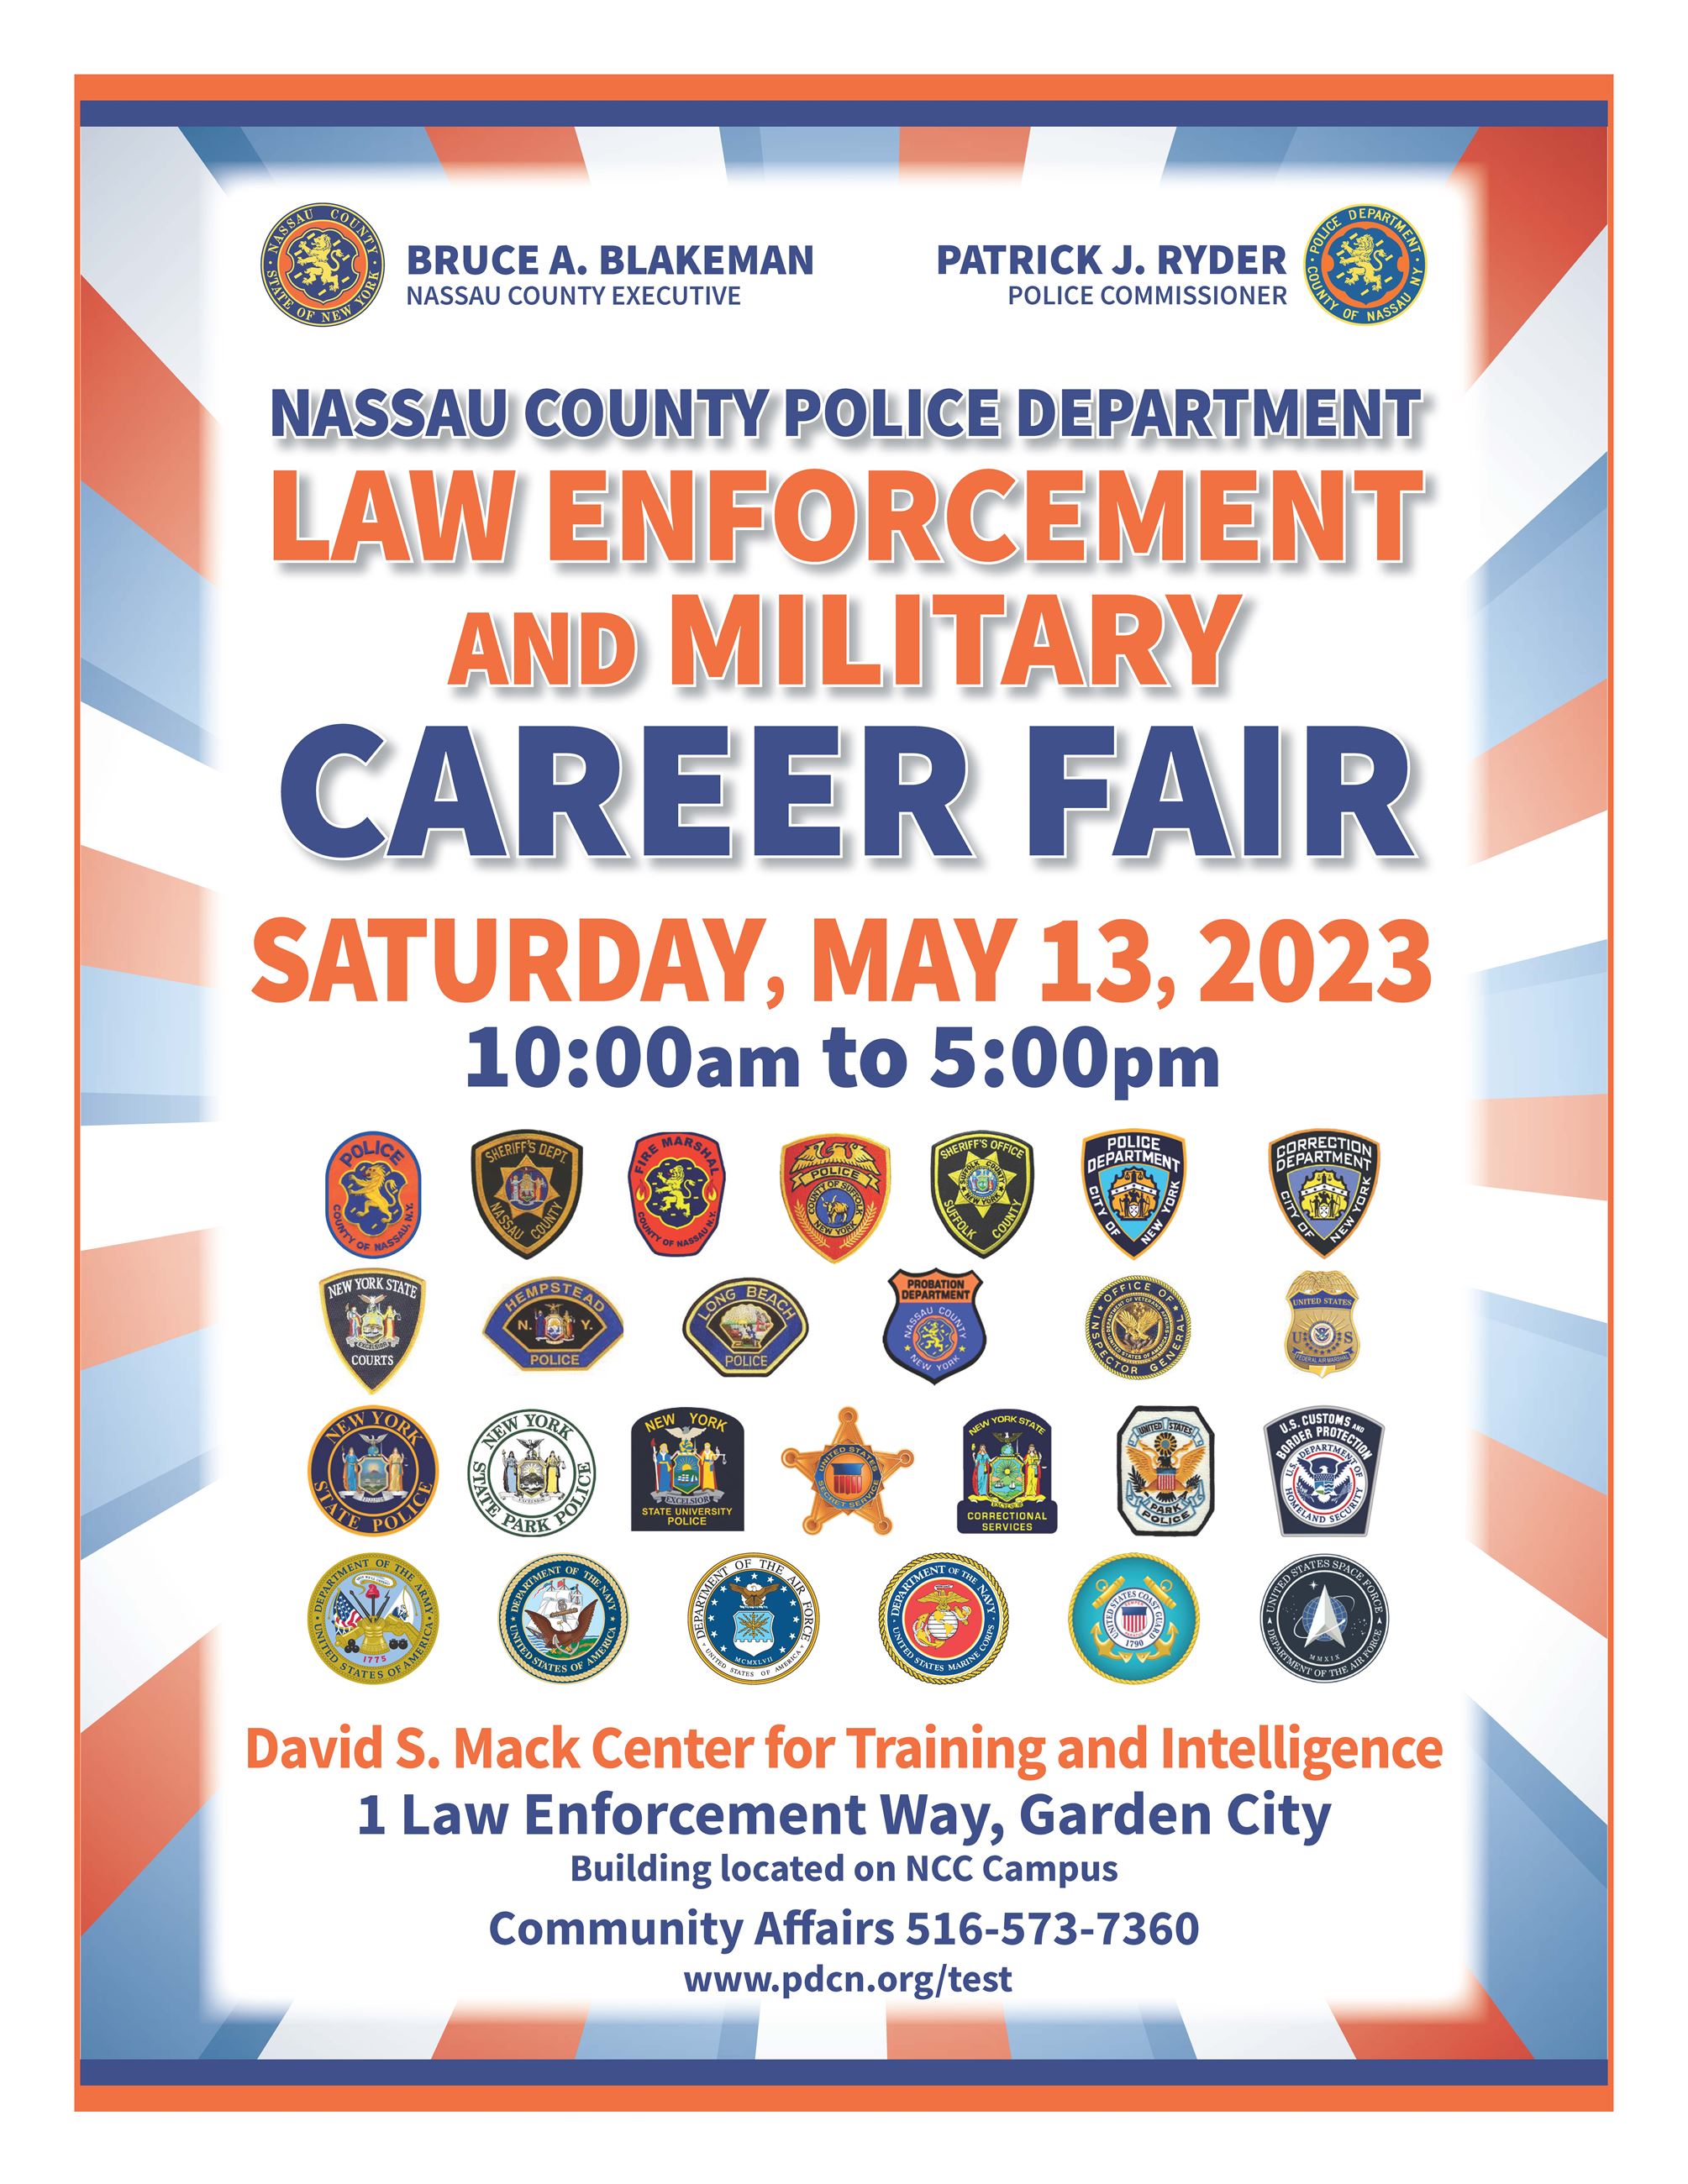 NCPD Law Enforcement Career Fair 2023